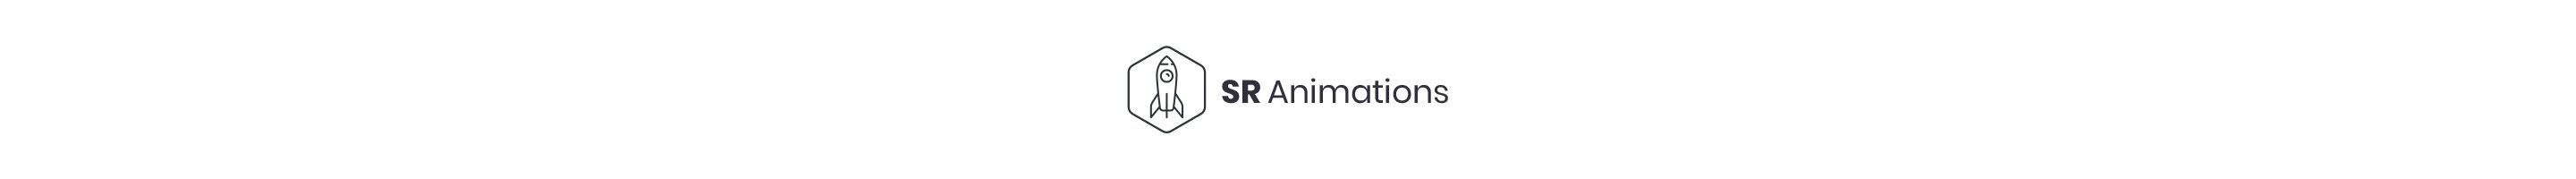 SR Animations